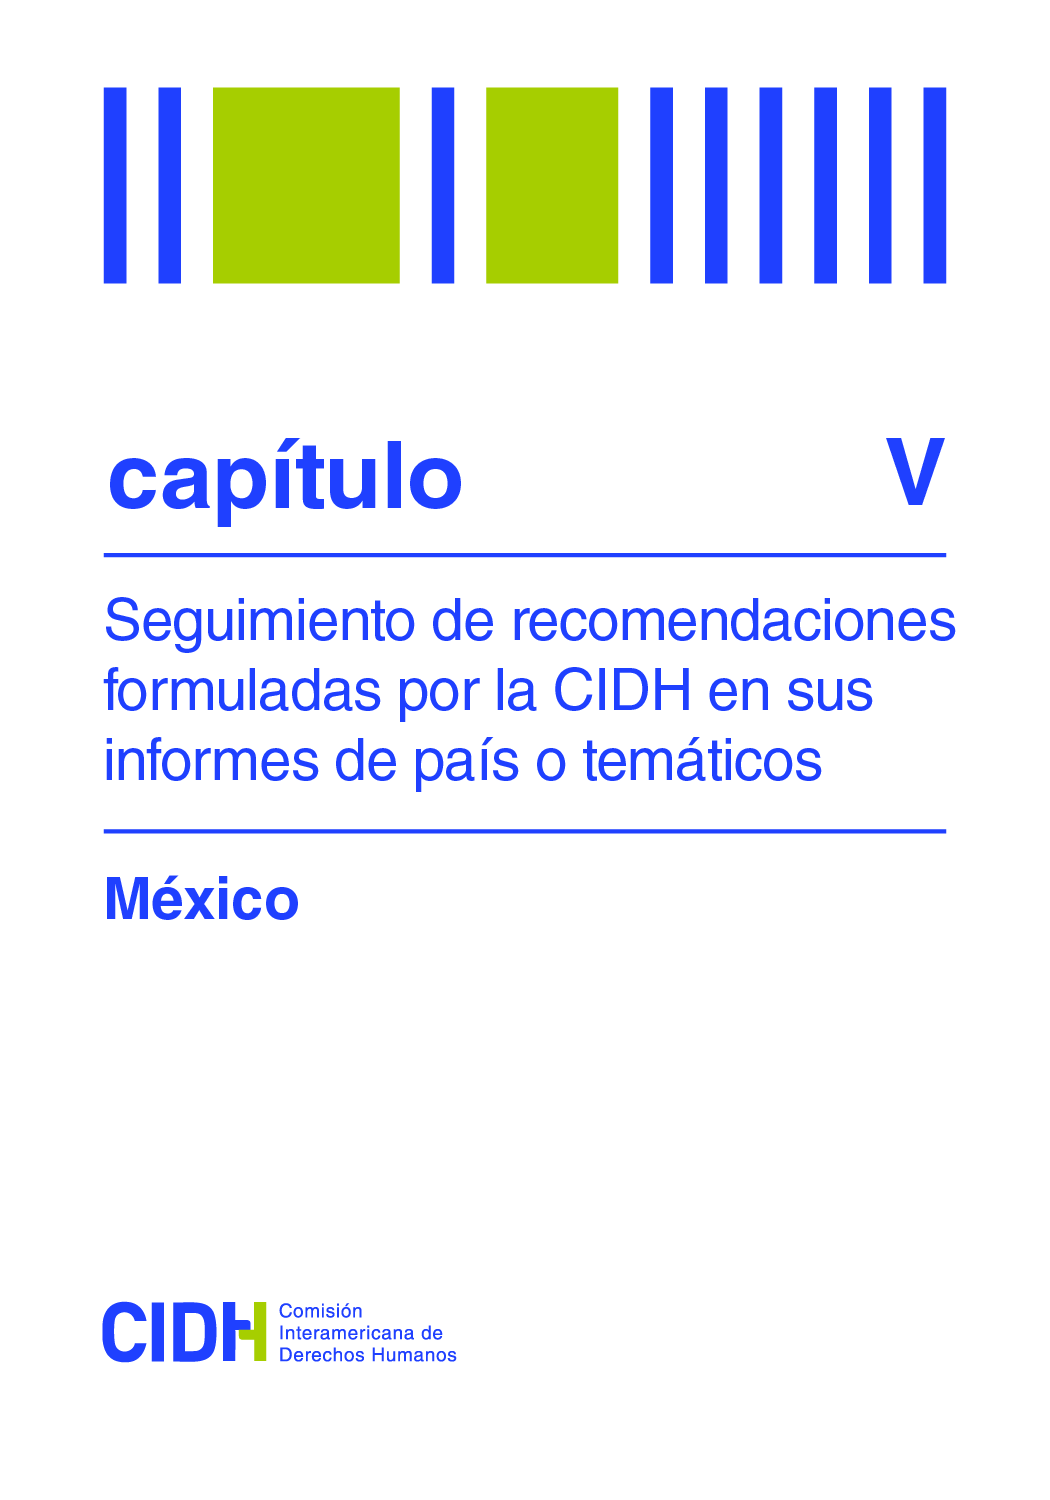 Sexto informe de seguimiento de las recomendaciones formuladas por la CIDH en el Informe sobre la situacin de Derechos Humanos en Mxico